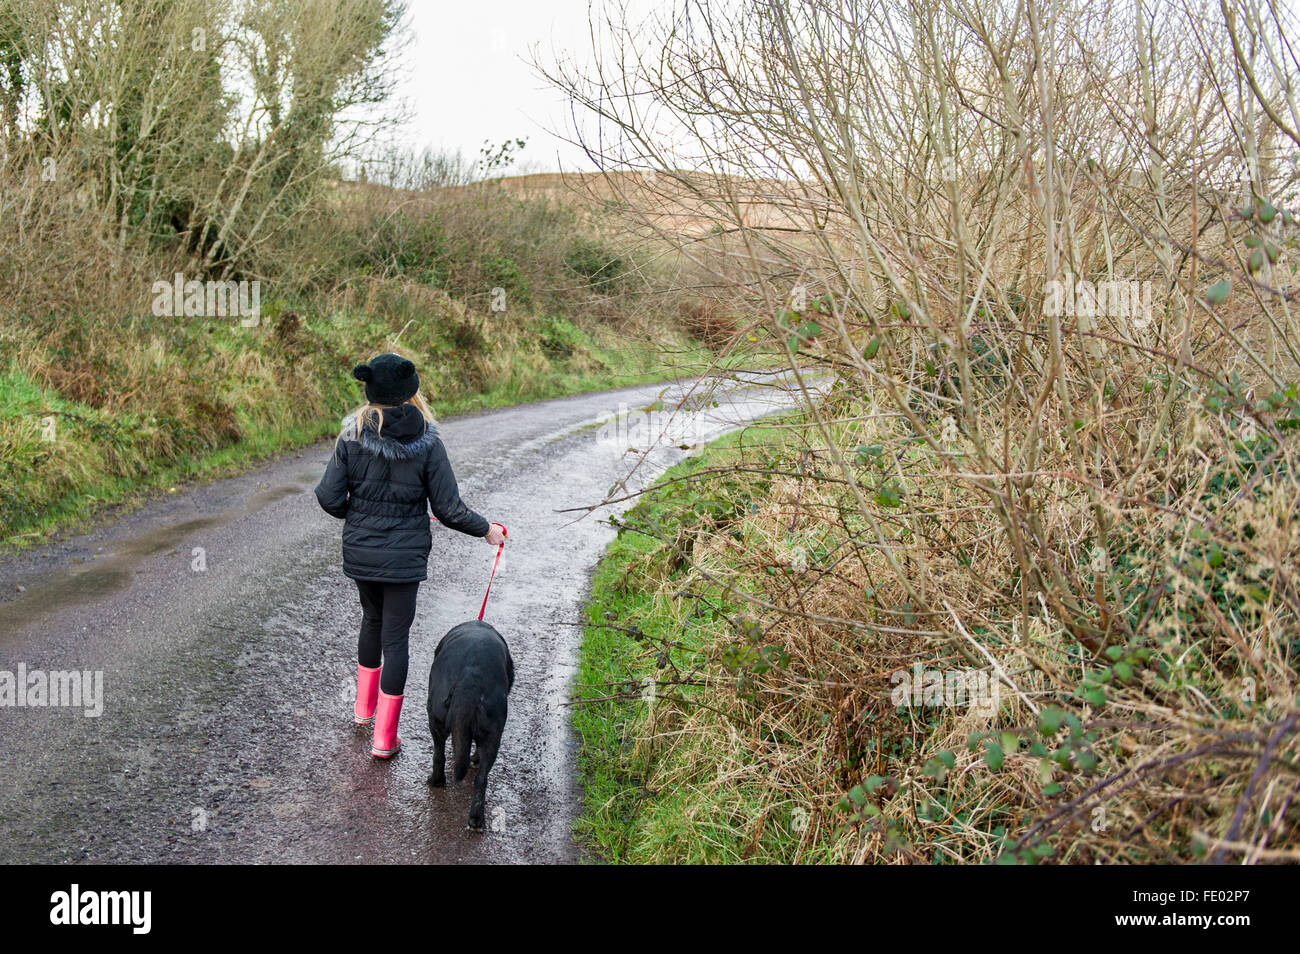 Une jeune fille marche son chien vers le bas une route de campagne dans la région de West Cork, Irlande. Banque D'Images